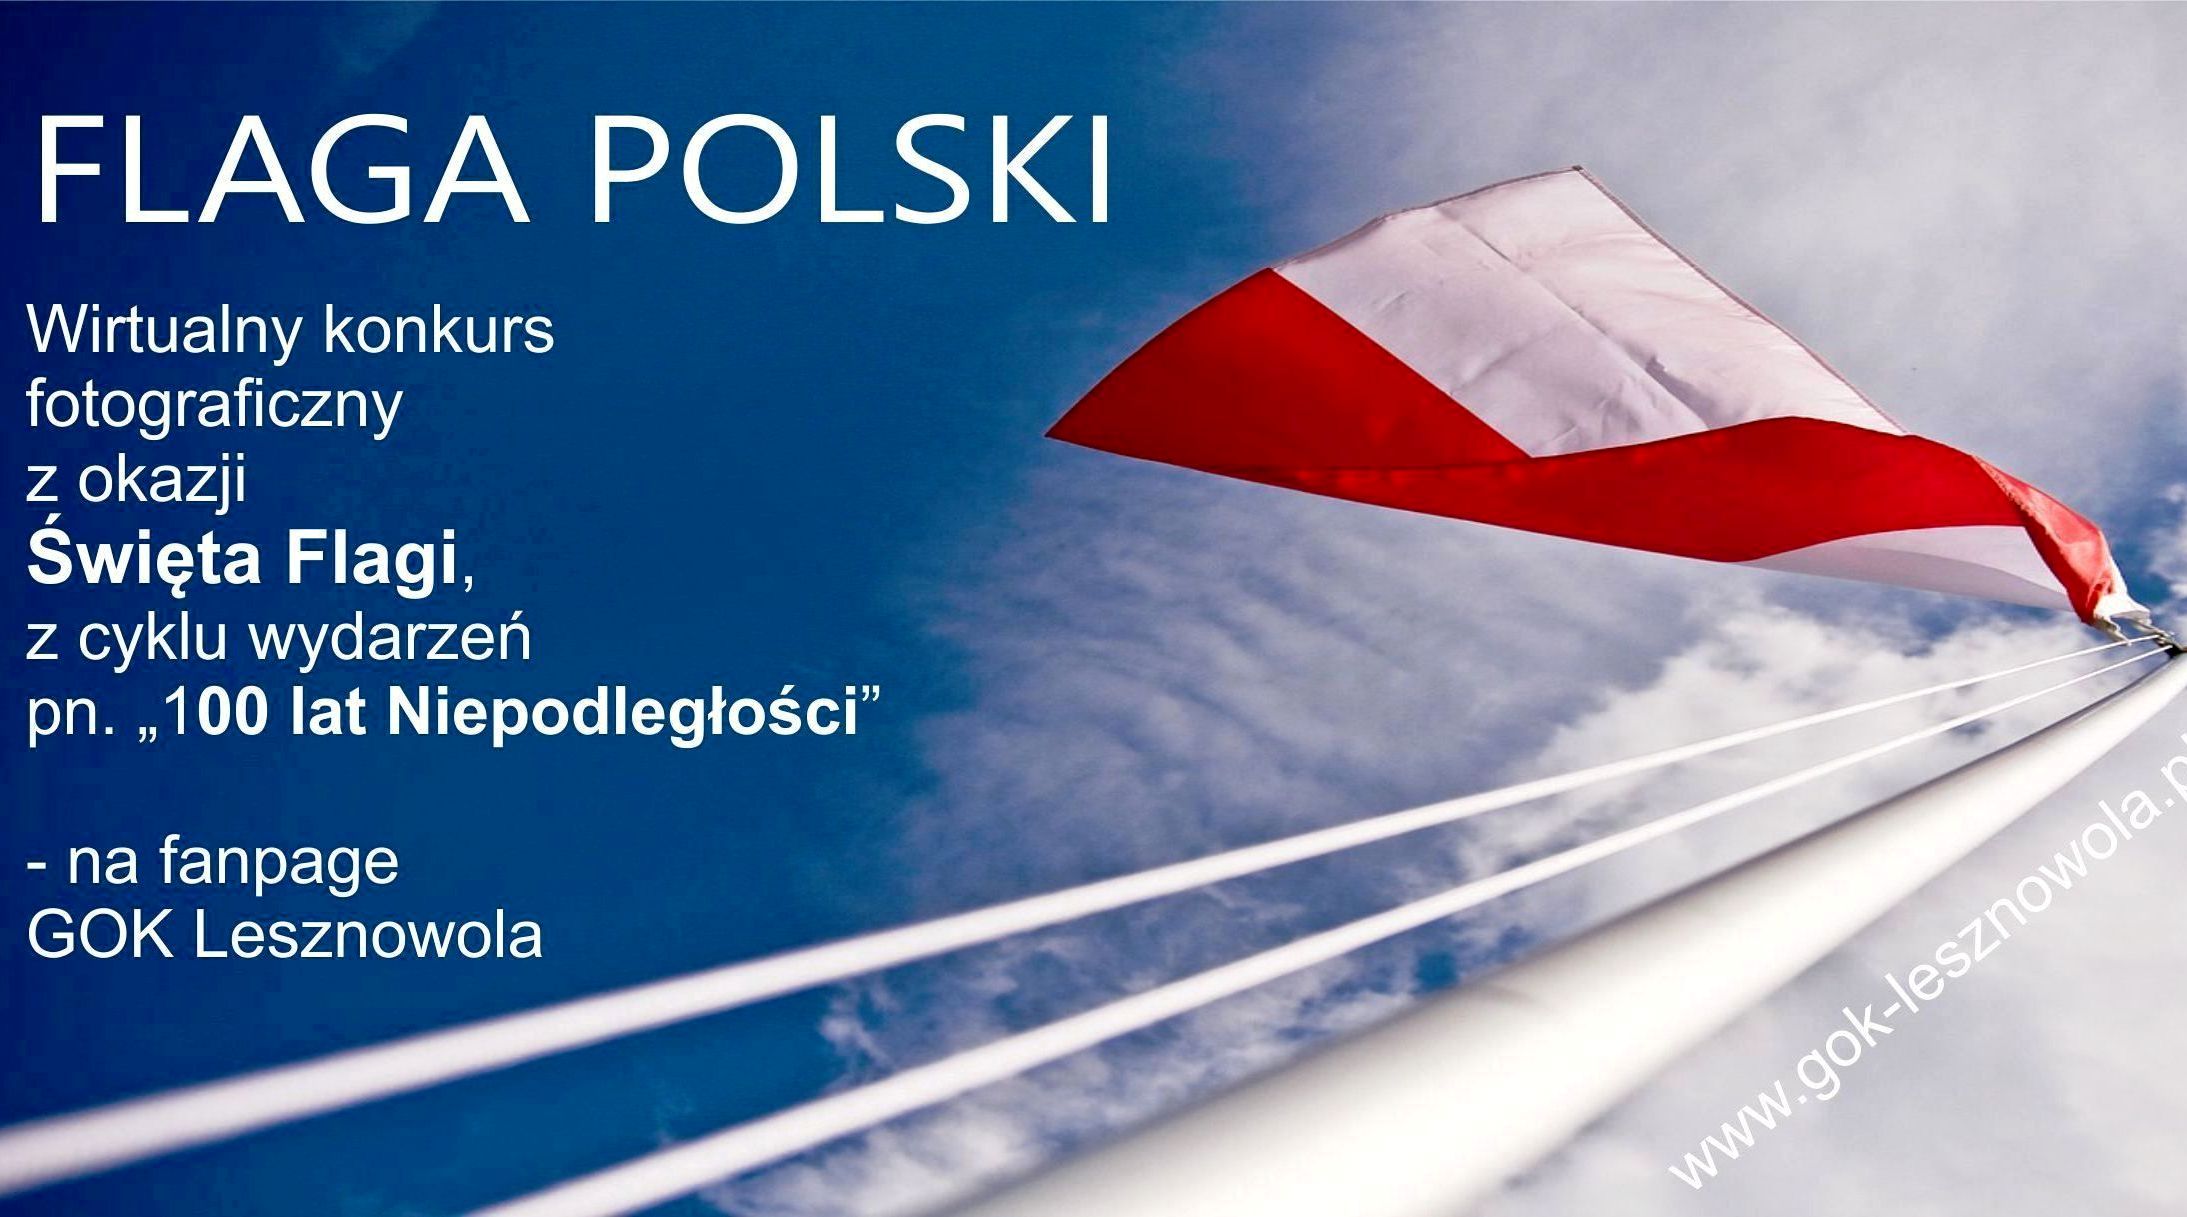 FLAGA POLSKI - WIRTUALNY KONKURS FOTOGRAFICZNY NA FB Z OKAZJI 100-LECIA ODZYSKANIA NIEPODLEGŁOŚCI